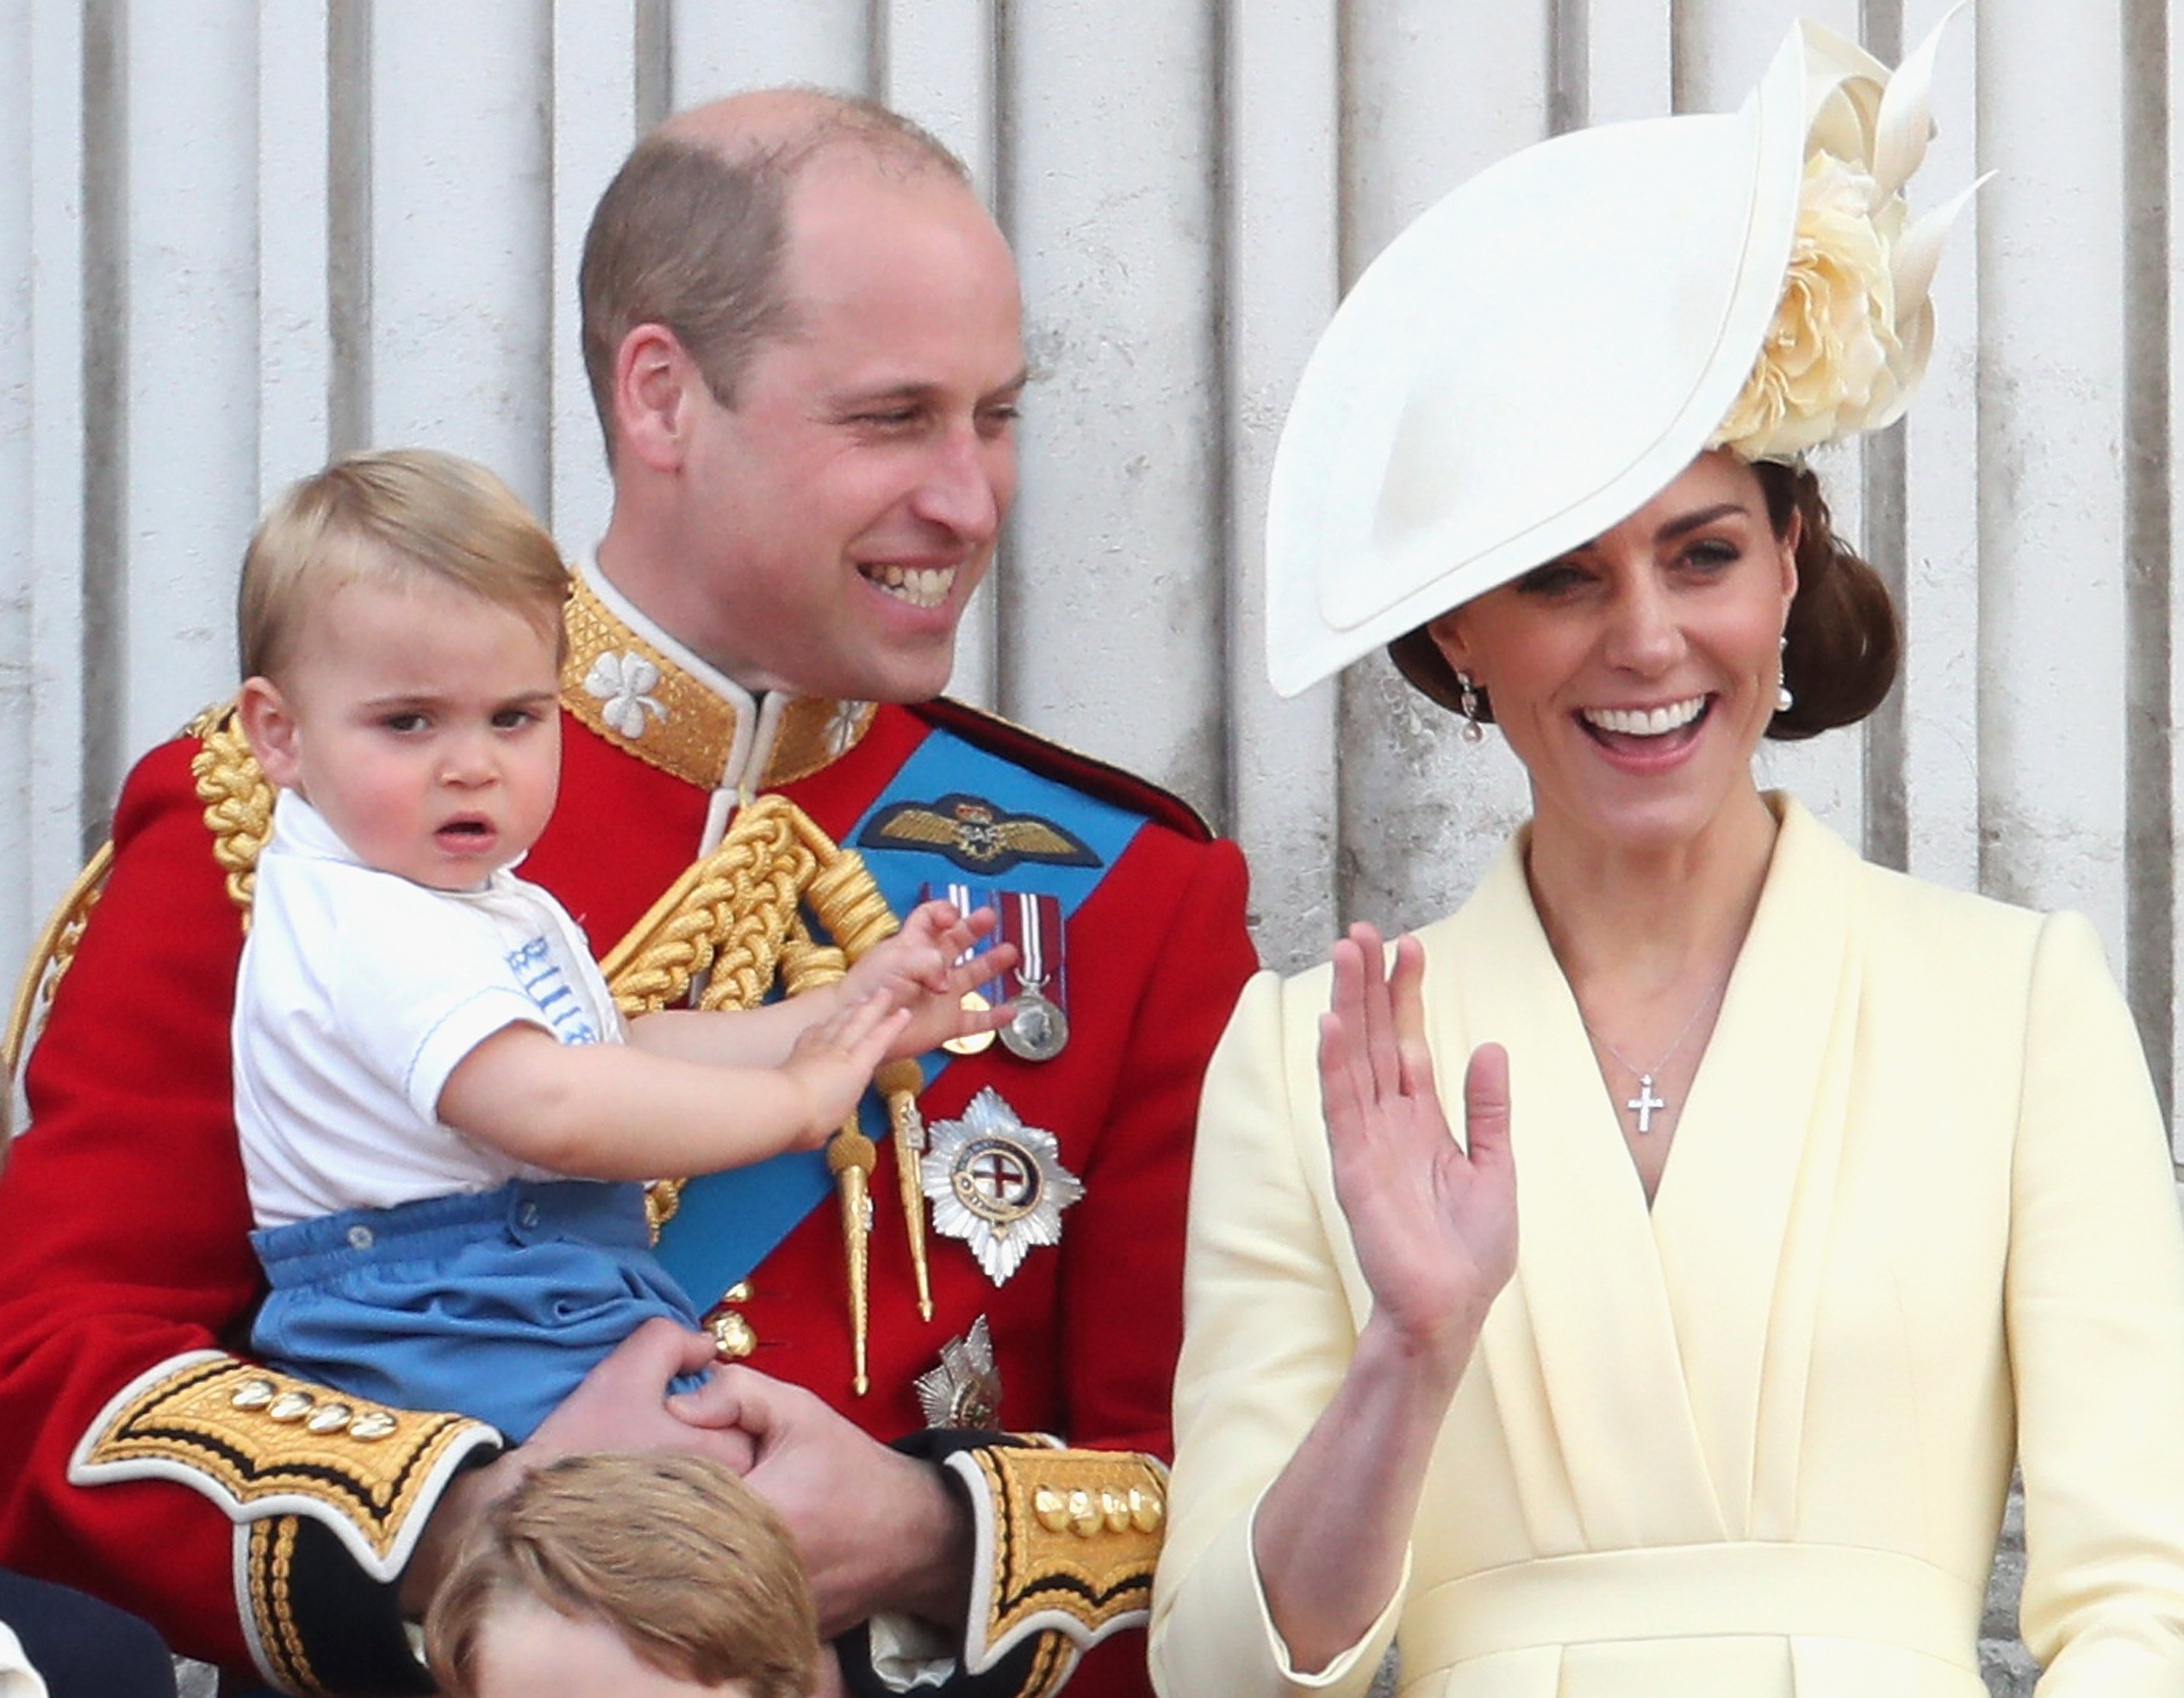 El príncipe William sostiene al príncipe Louis junto a su esposa Kate Middleton en el desfile del estandarte, en junio de 2019 | Imagen: Getty Images